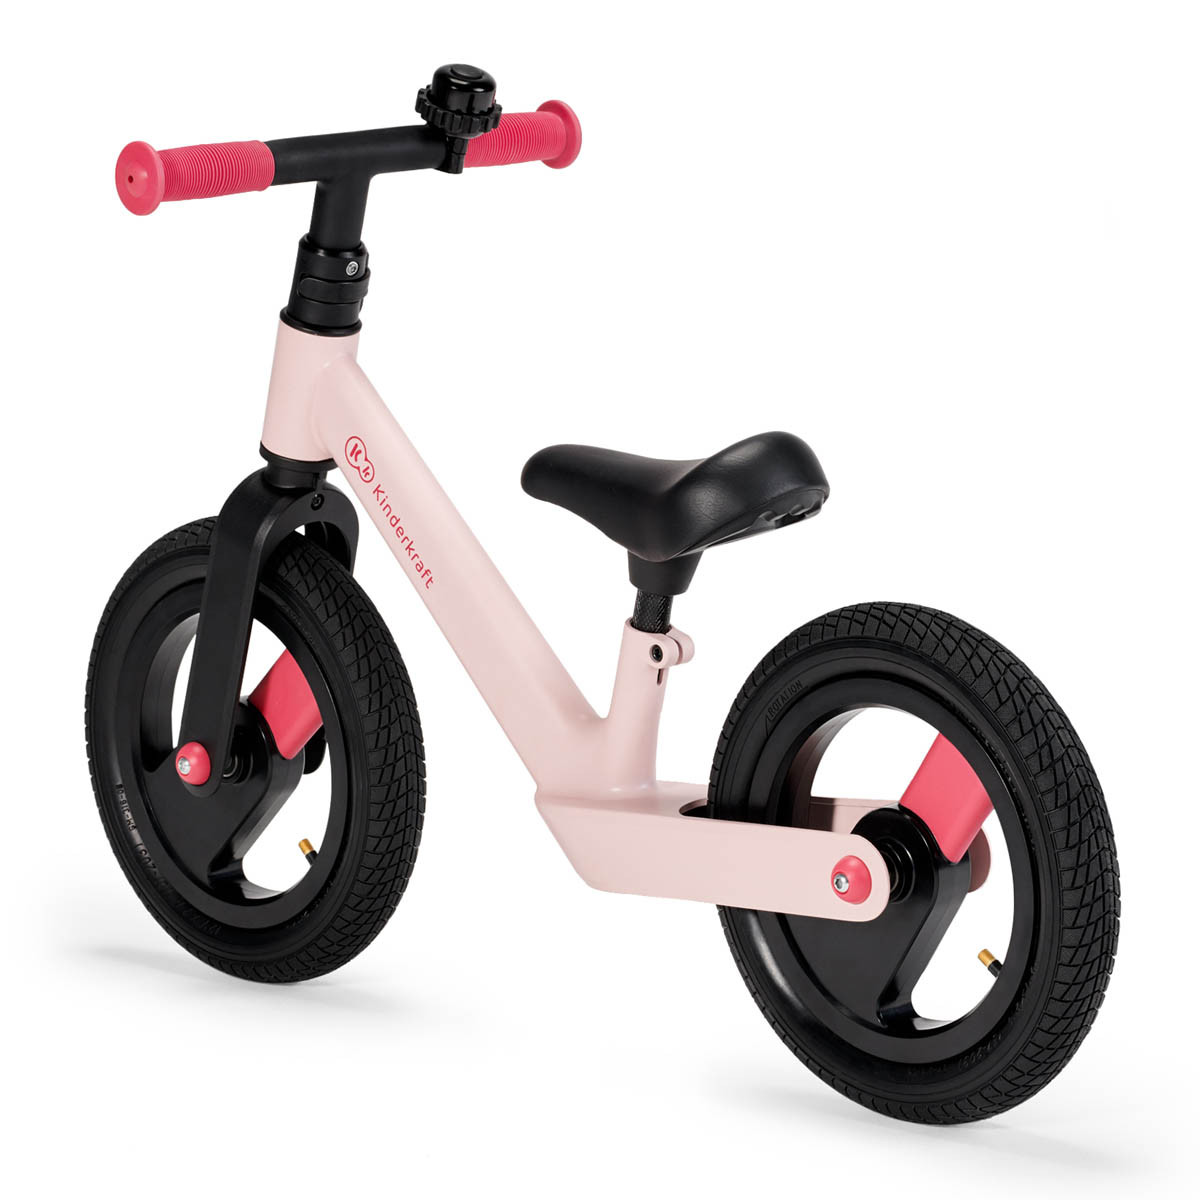 Kinderkraft goswift bicicleta de equilibrio super ligera con el marco de una aleación de magnesio.